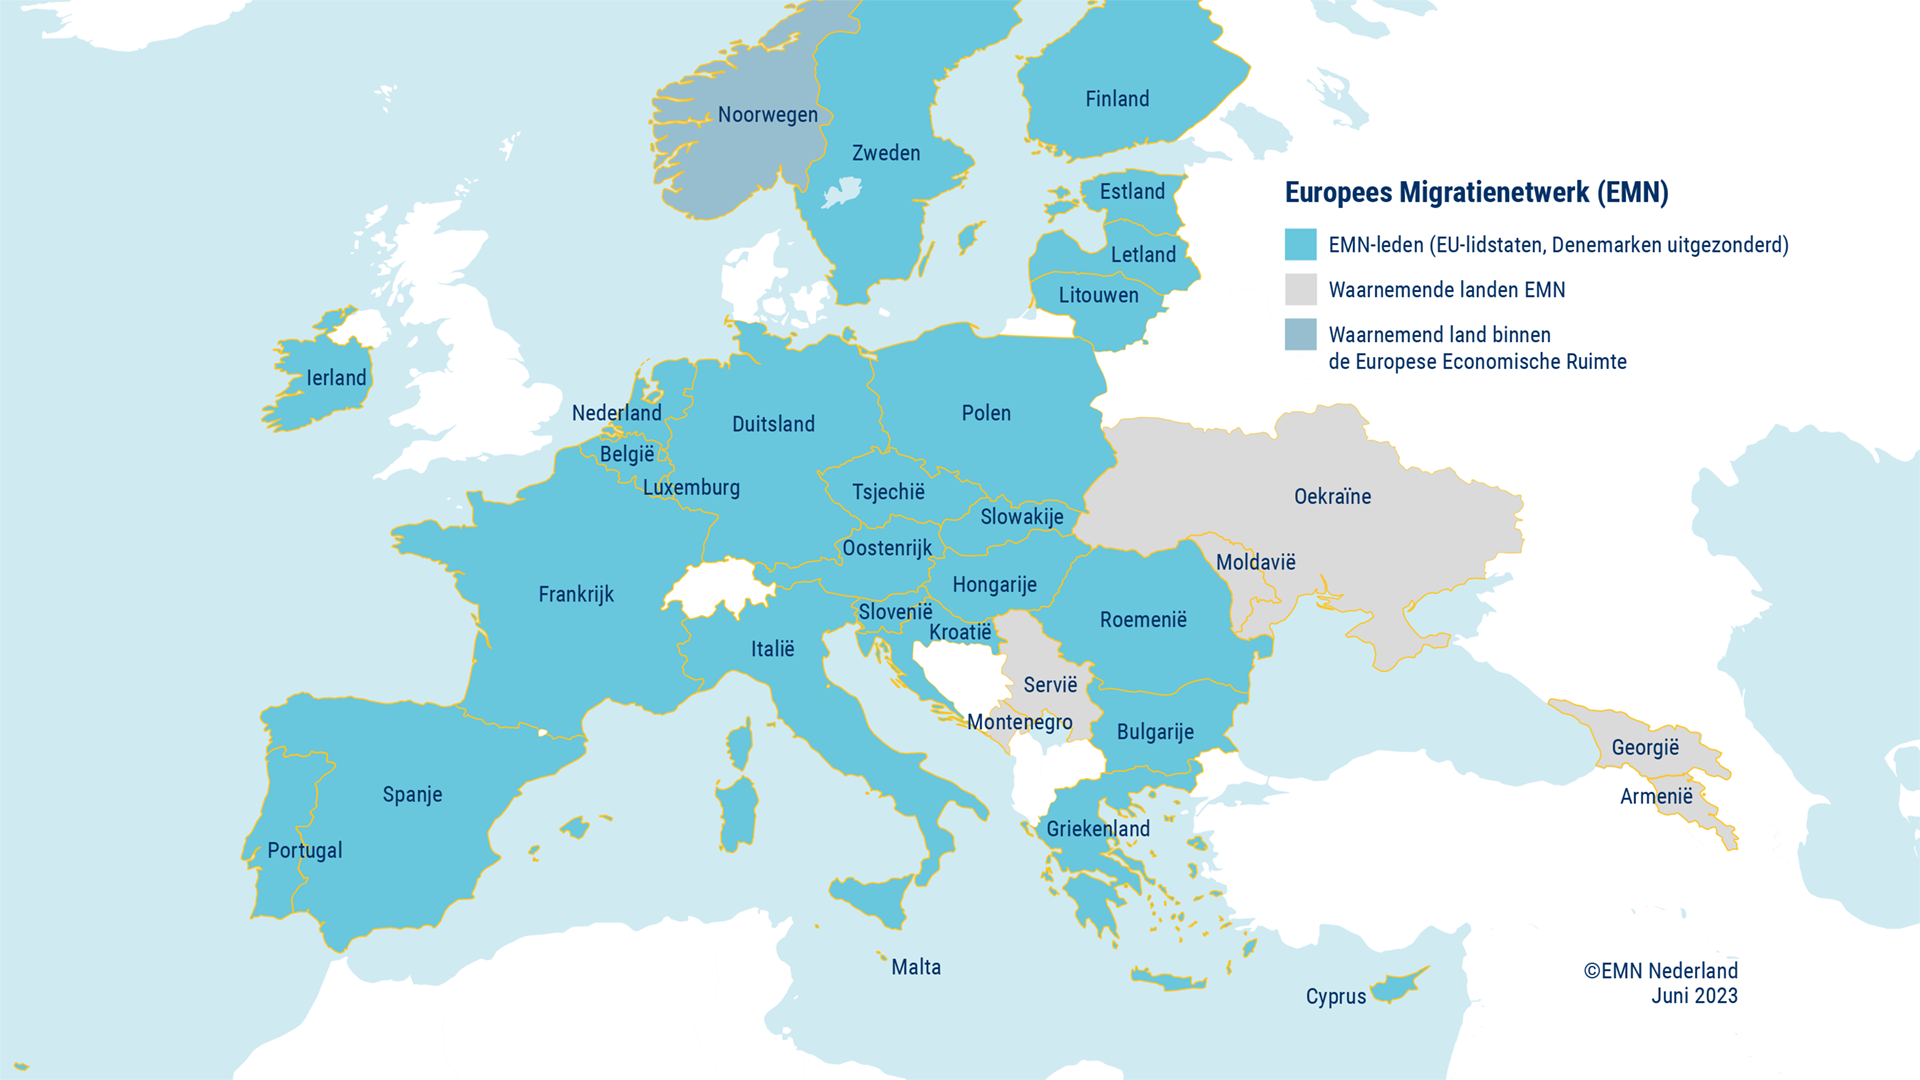 Kaartje Europa met EMN-leden en waarnemende landen EMN